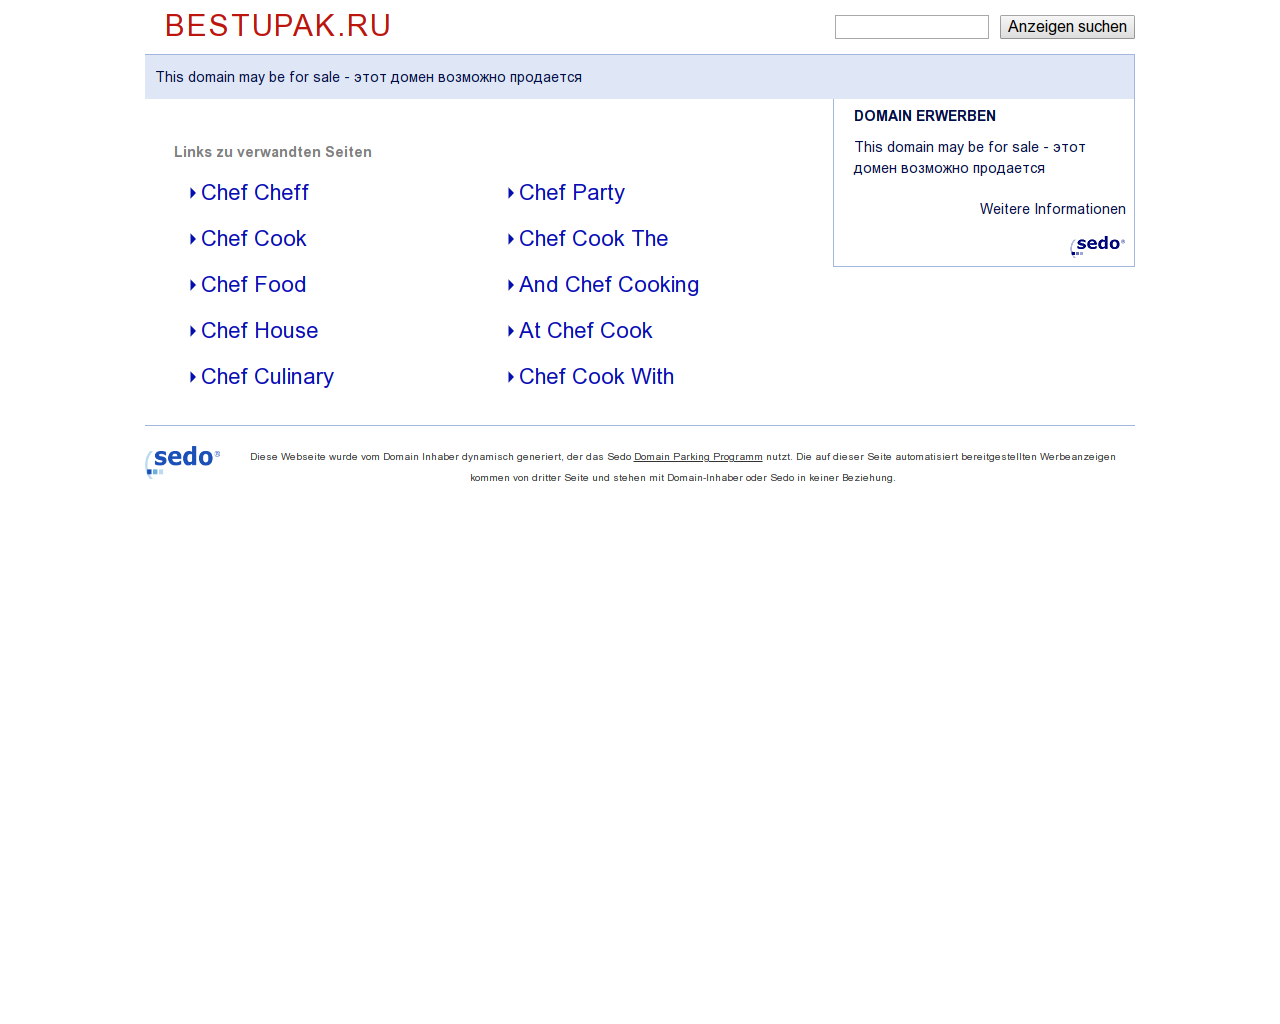 Изображение сайта bestupak.ru в разрешении 1280x1024